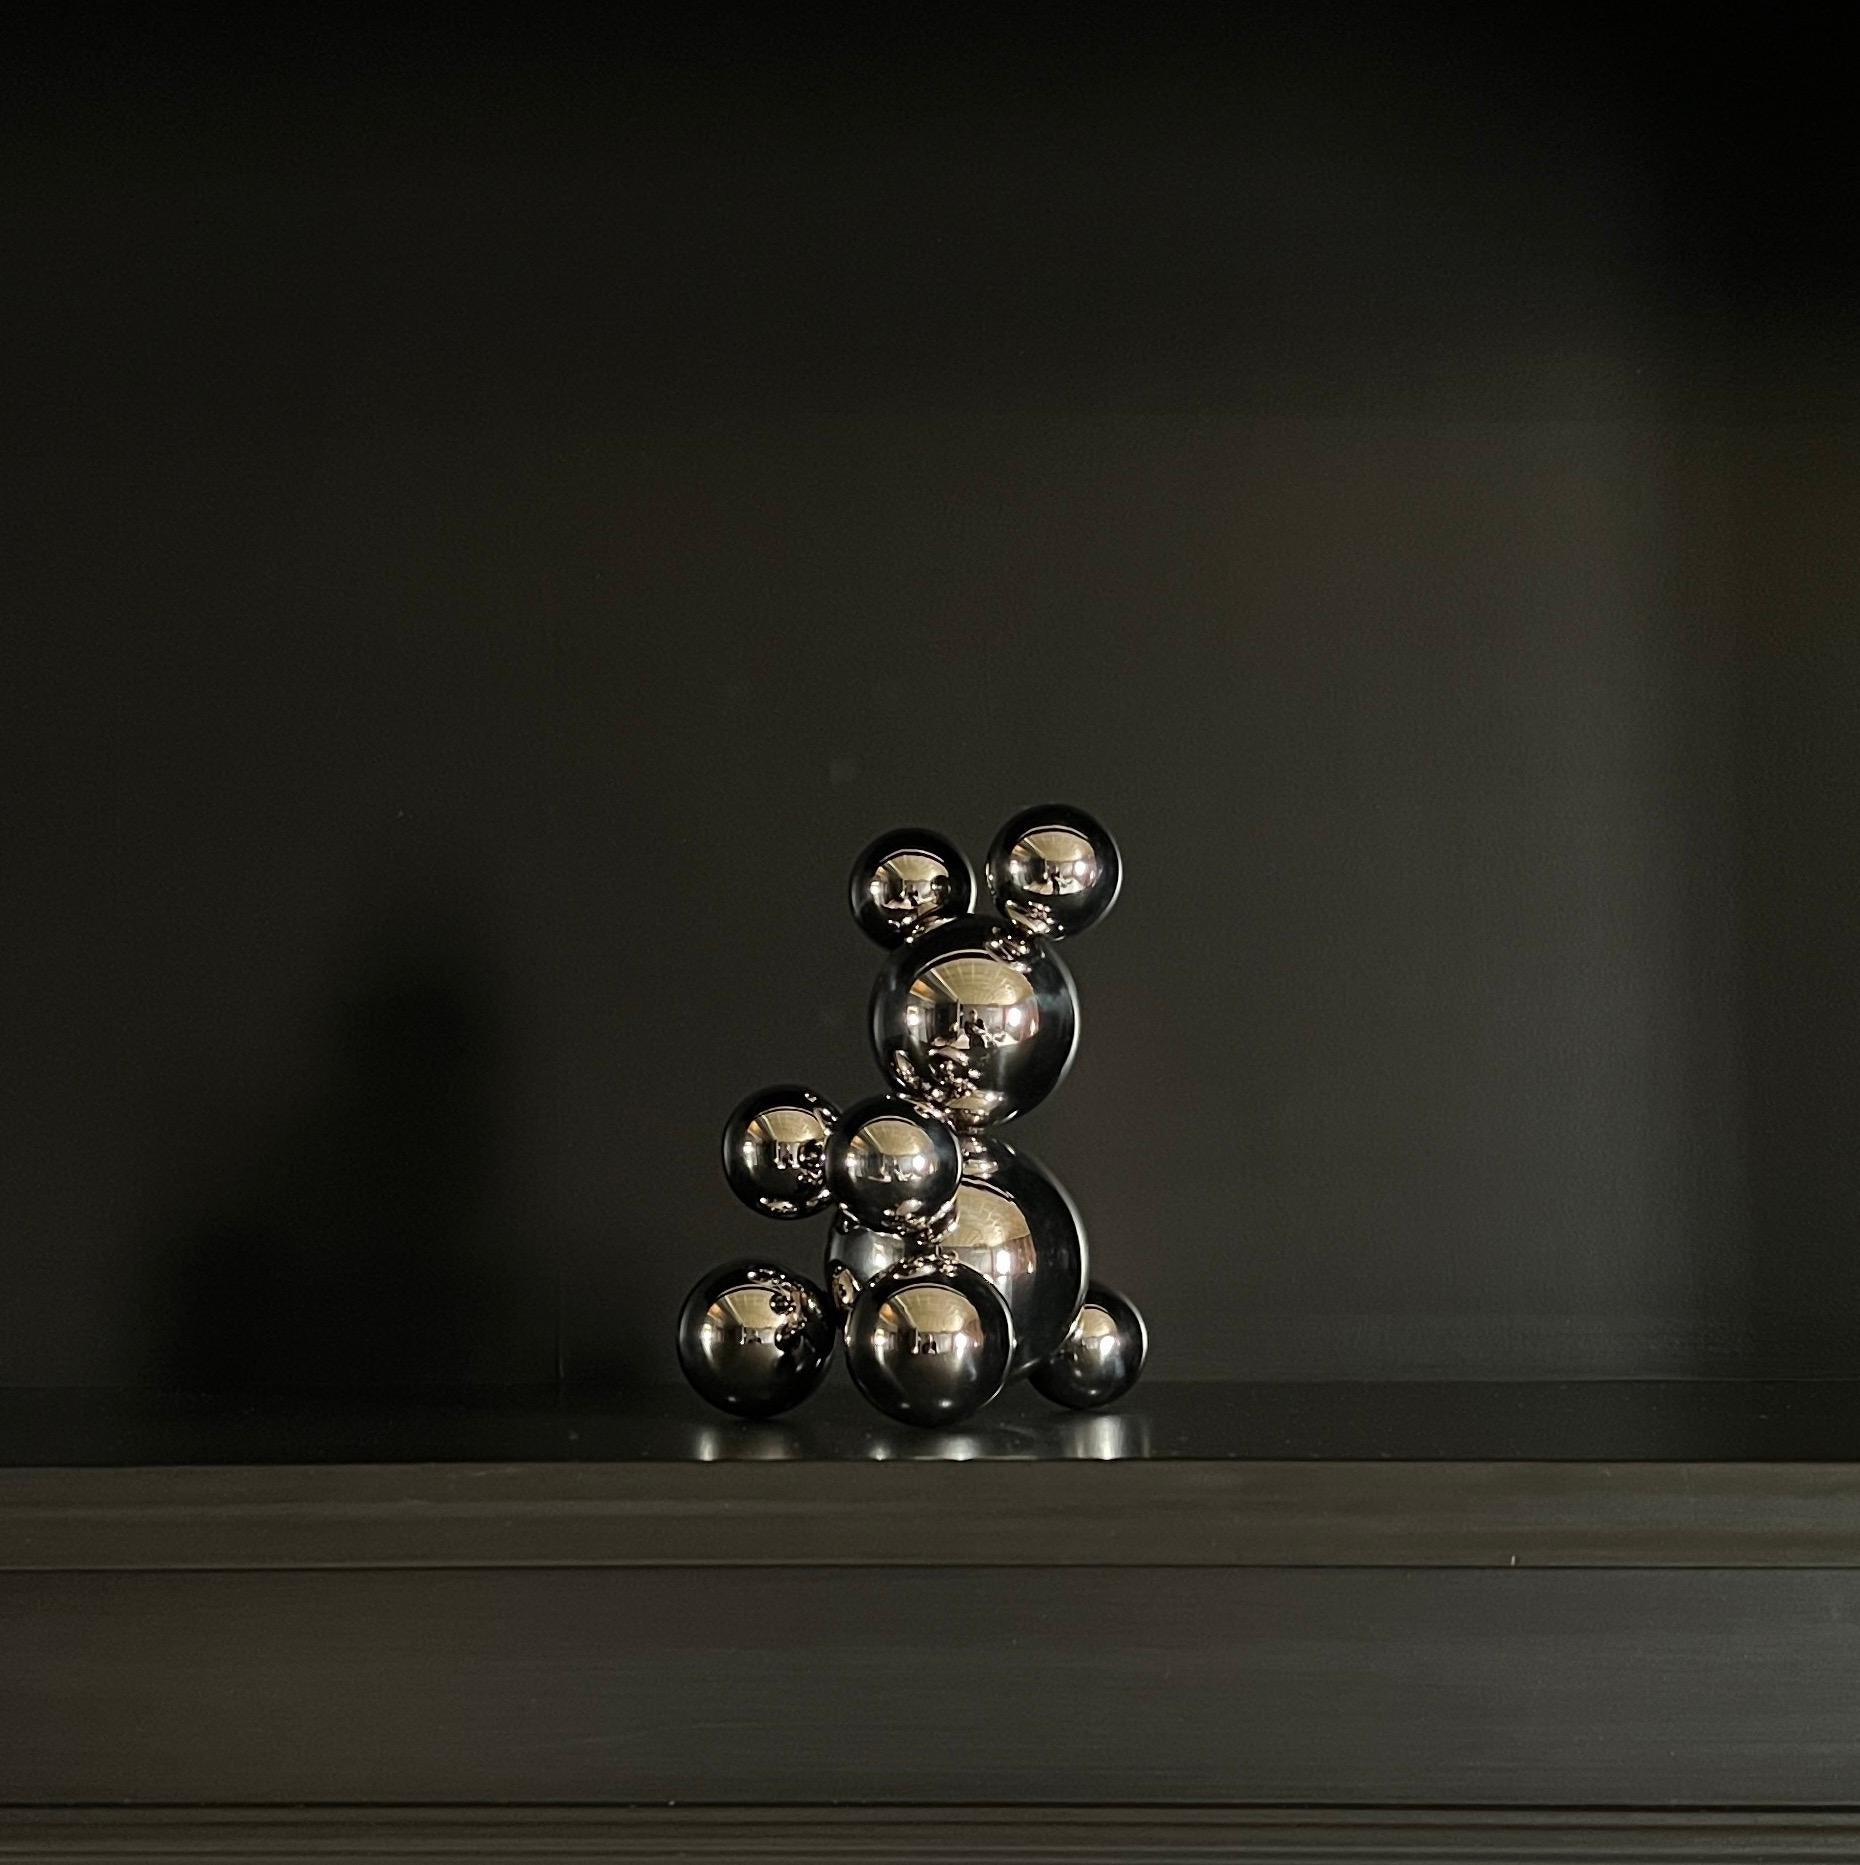 Tiny Stainless Steel Bear 'Miranda' Sculpture Minimalistic Animal 4